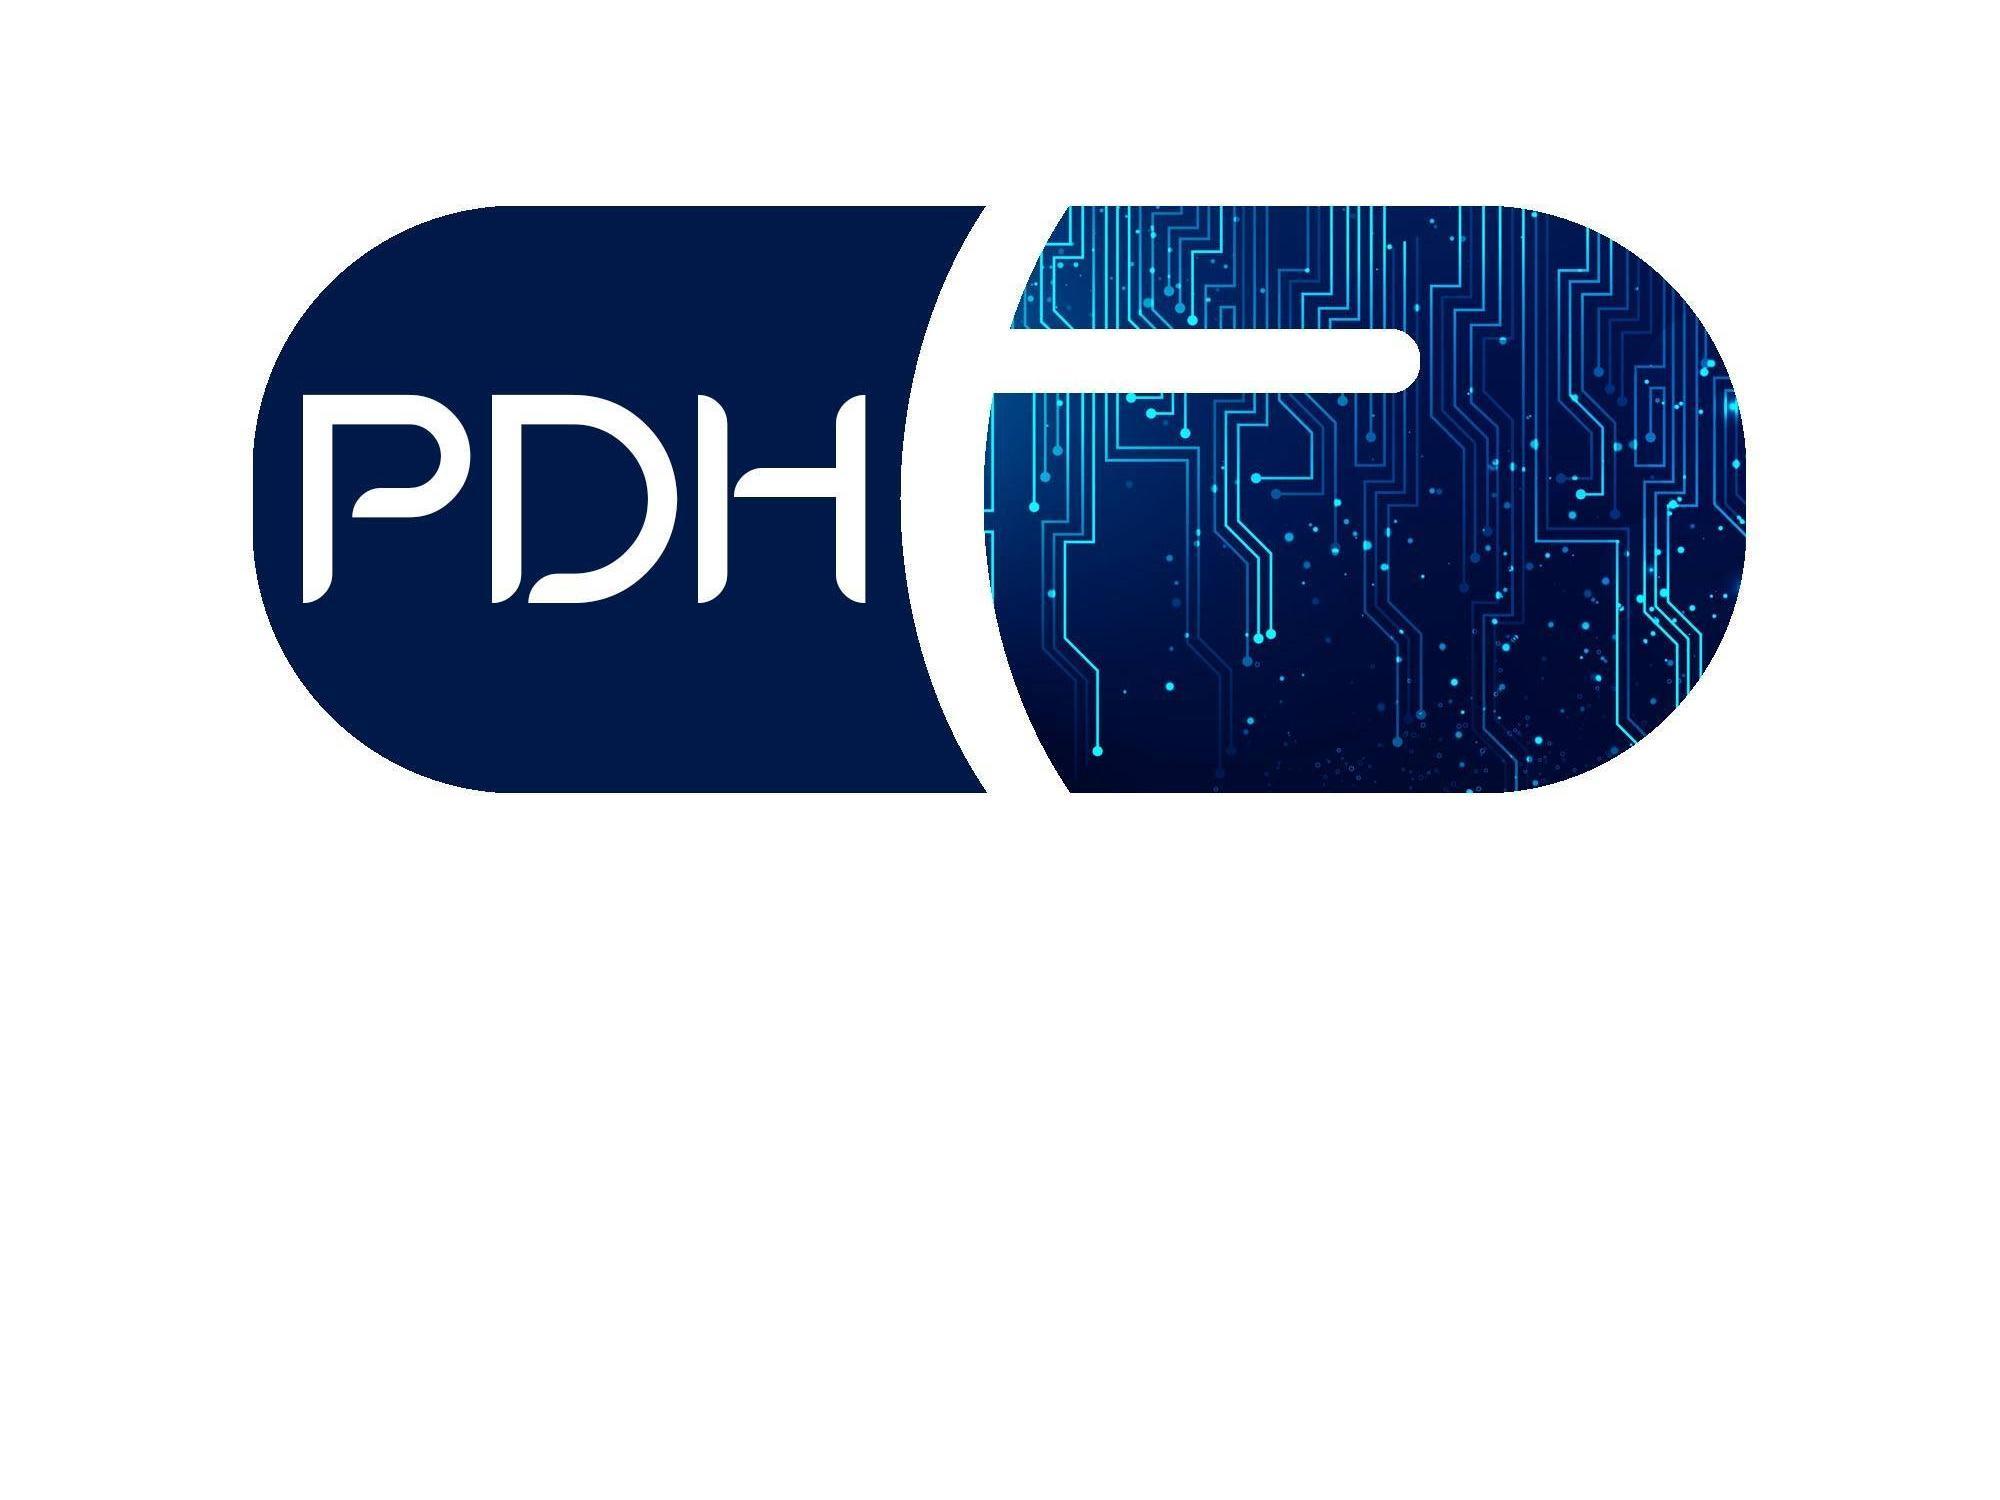 PDH logo